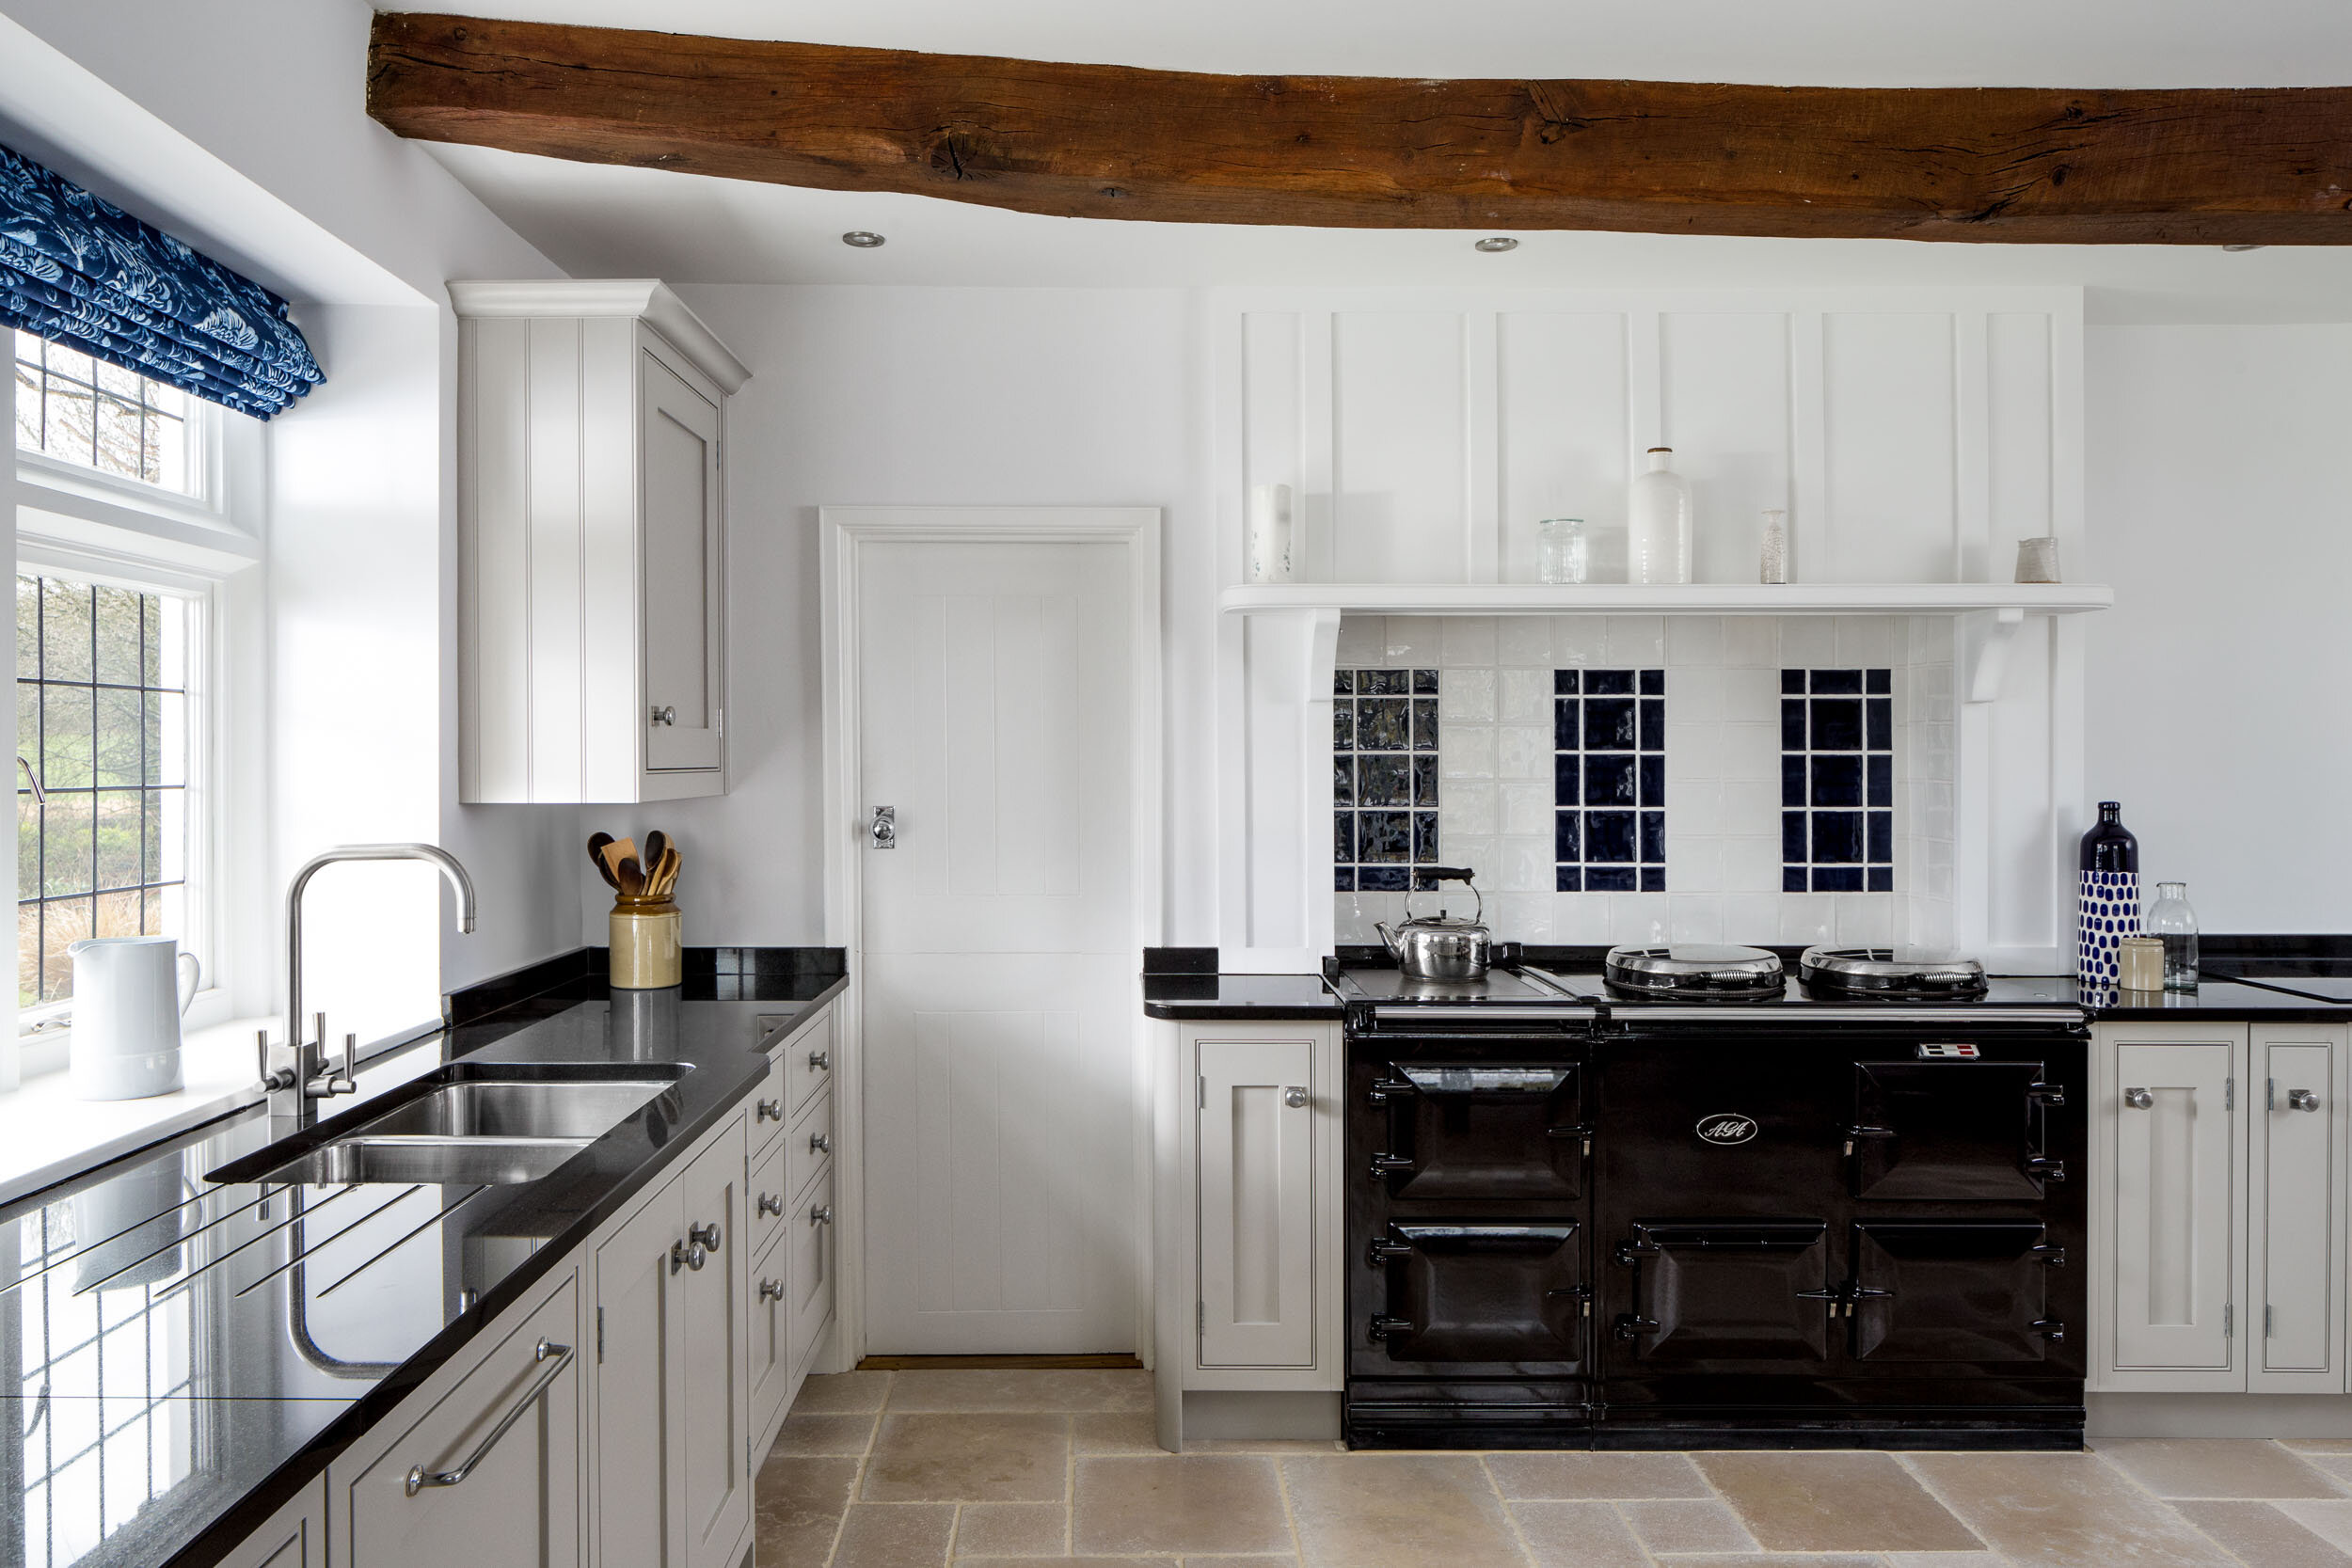 handmade bespoke kitchen interior west yorkshire hebden bridge lancaster.jpg